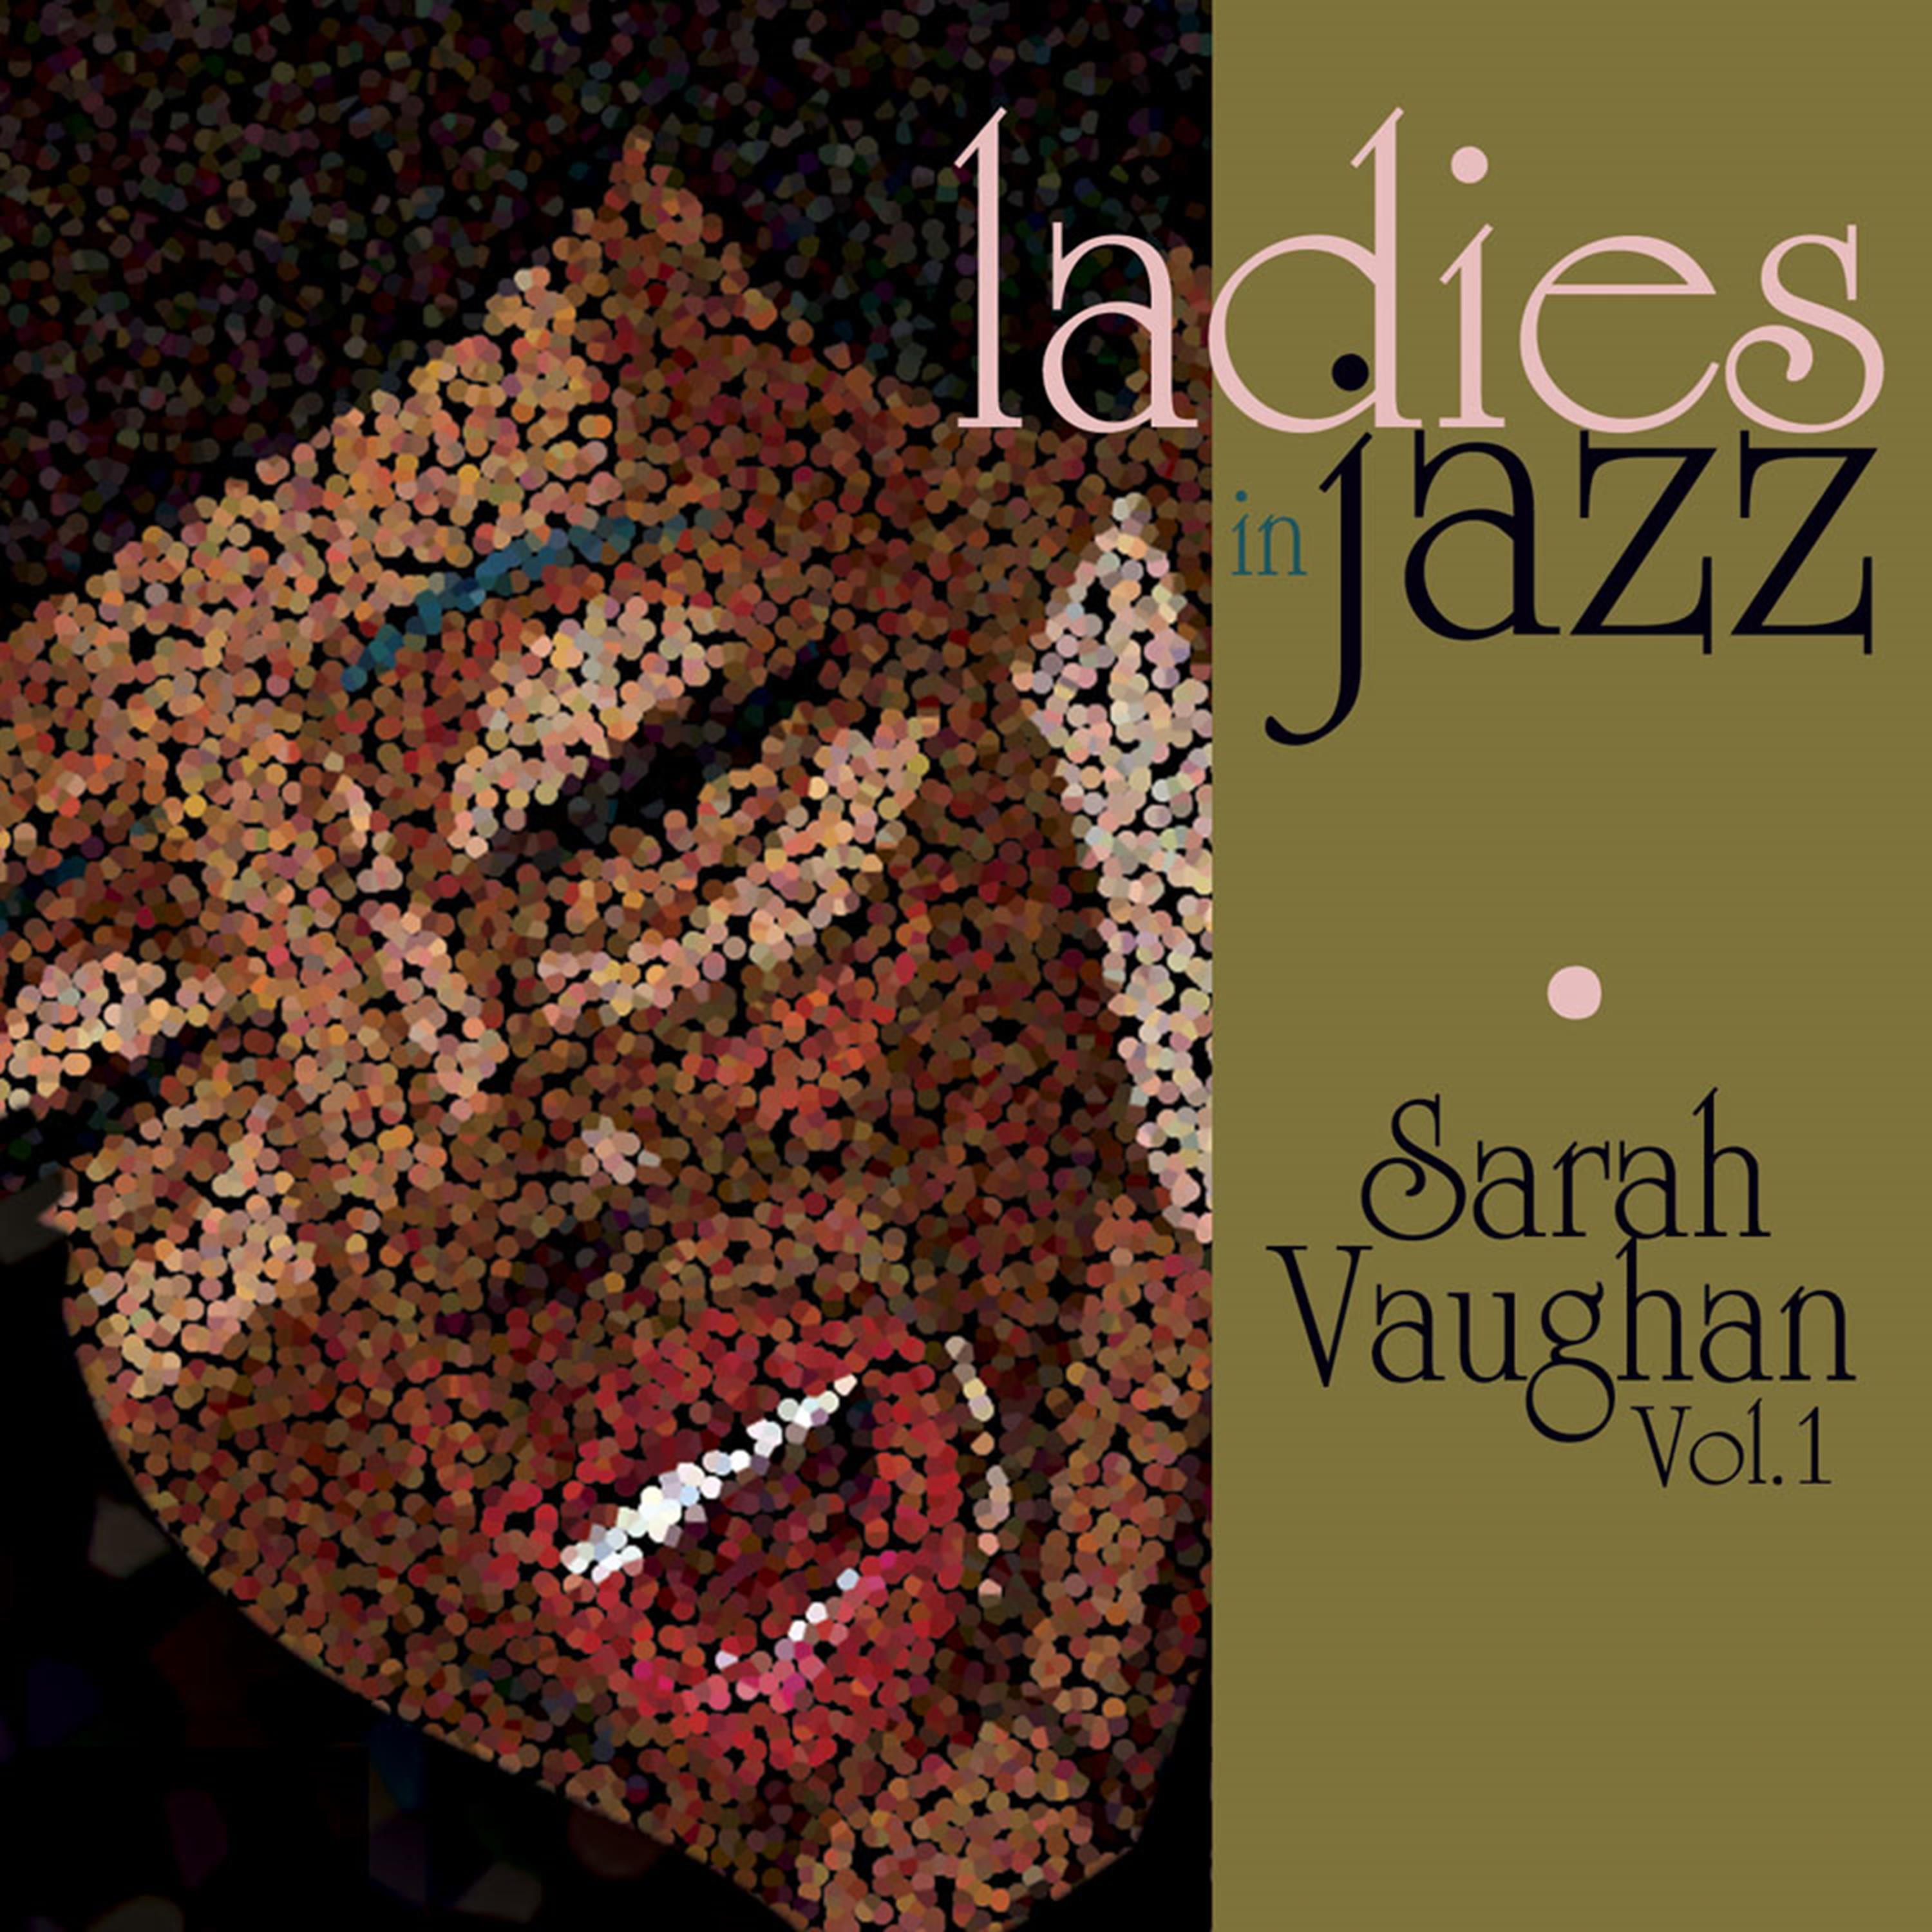 Ladies in Jazz - Sarah Vaughan, Vol. 1